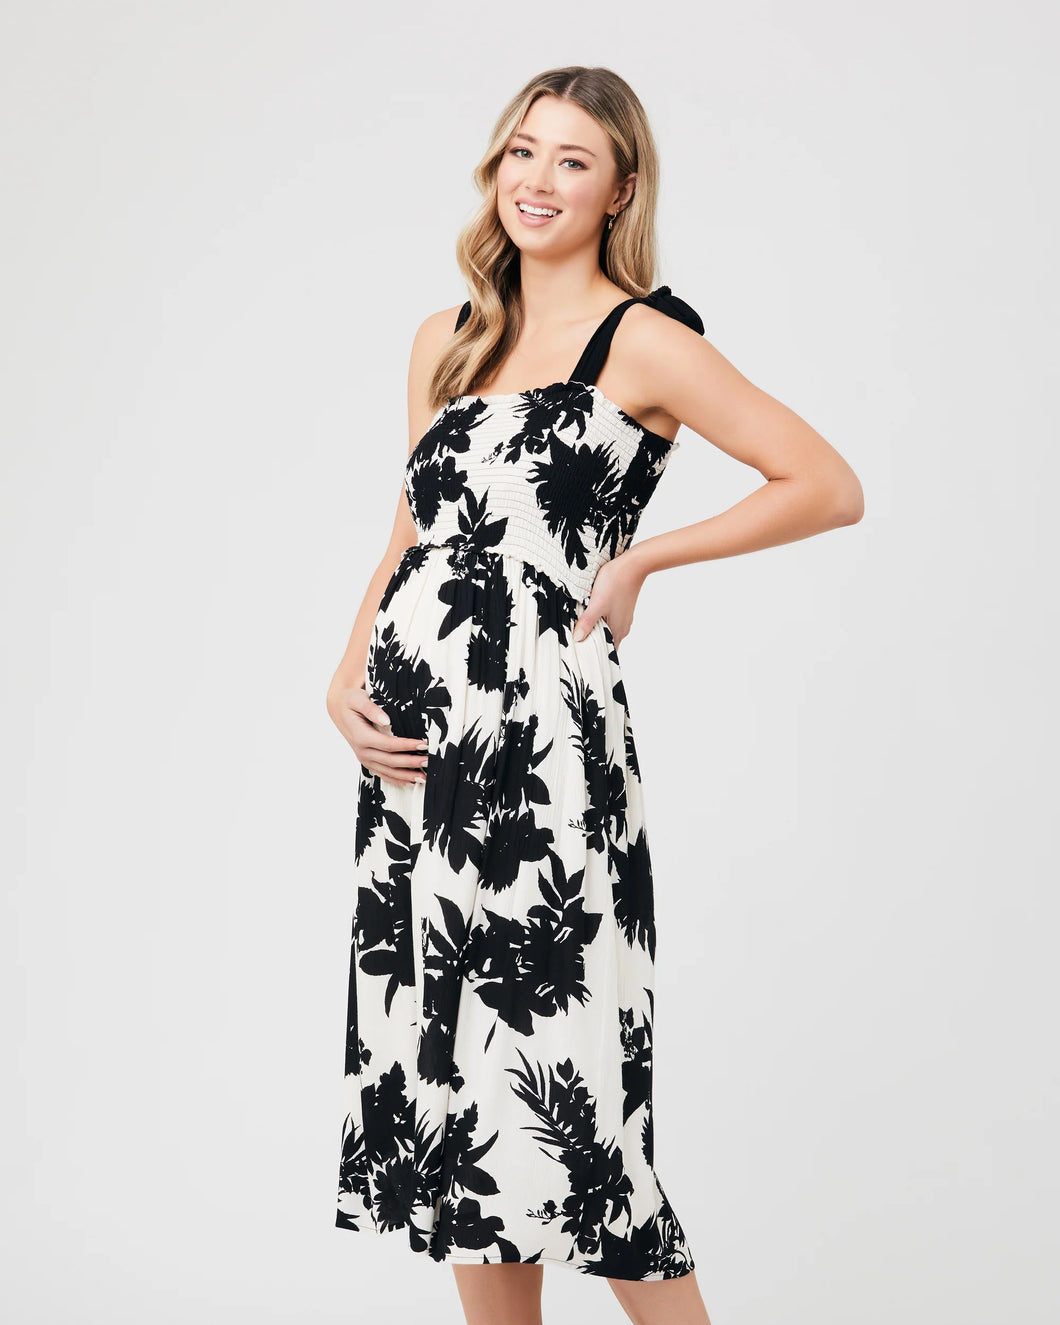 Ripe Maternity - Angie dress  | MILD zwangerschapsboetiek - zwangerschapskleding bij Mechelen